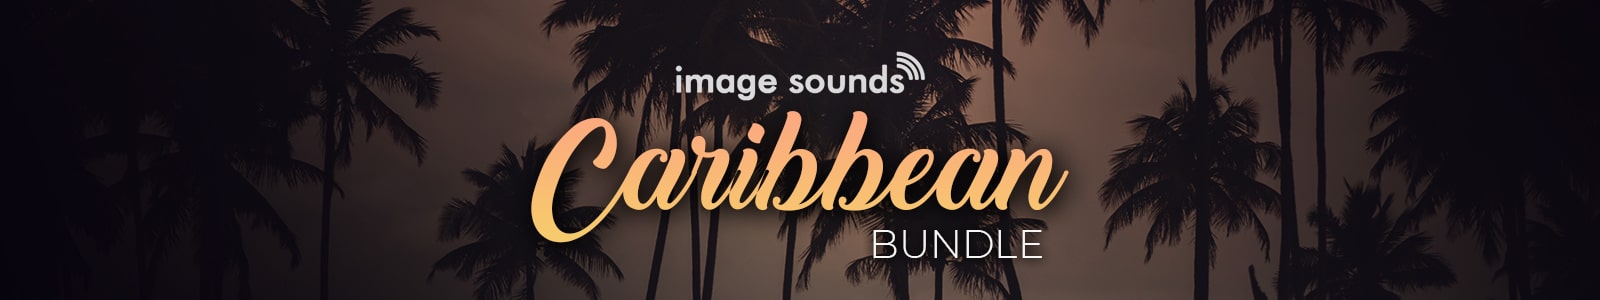 Caribbean Bundle by Image Sounds